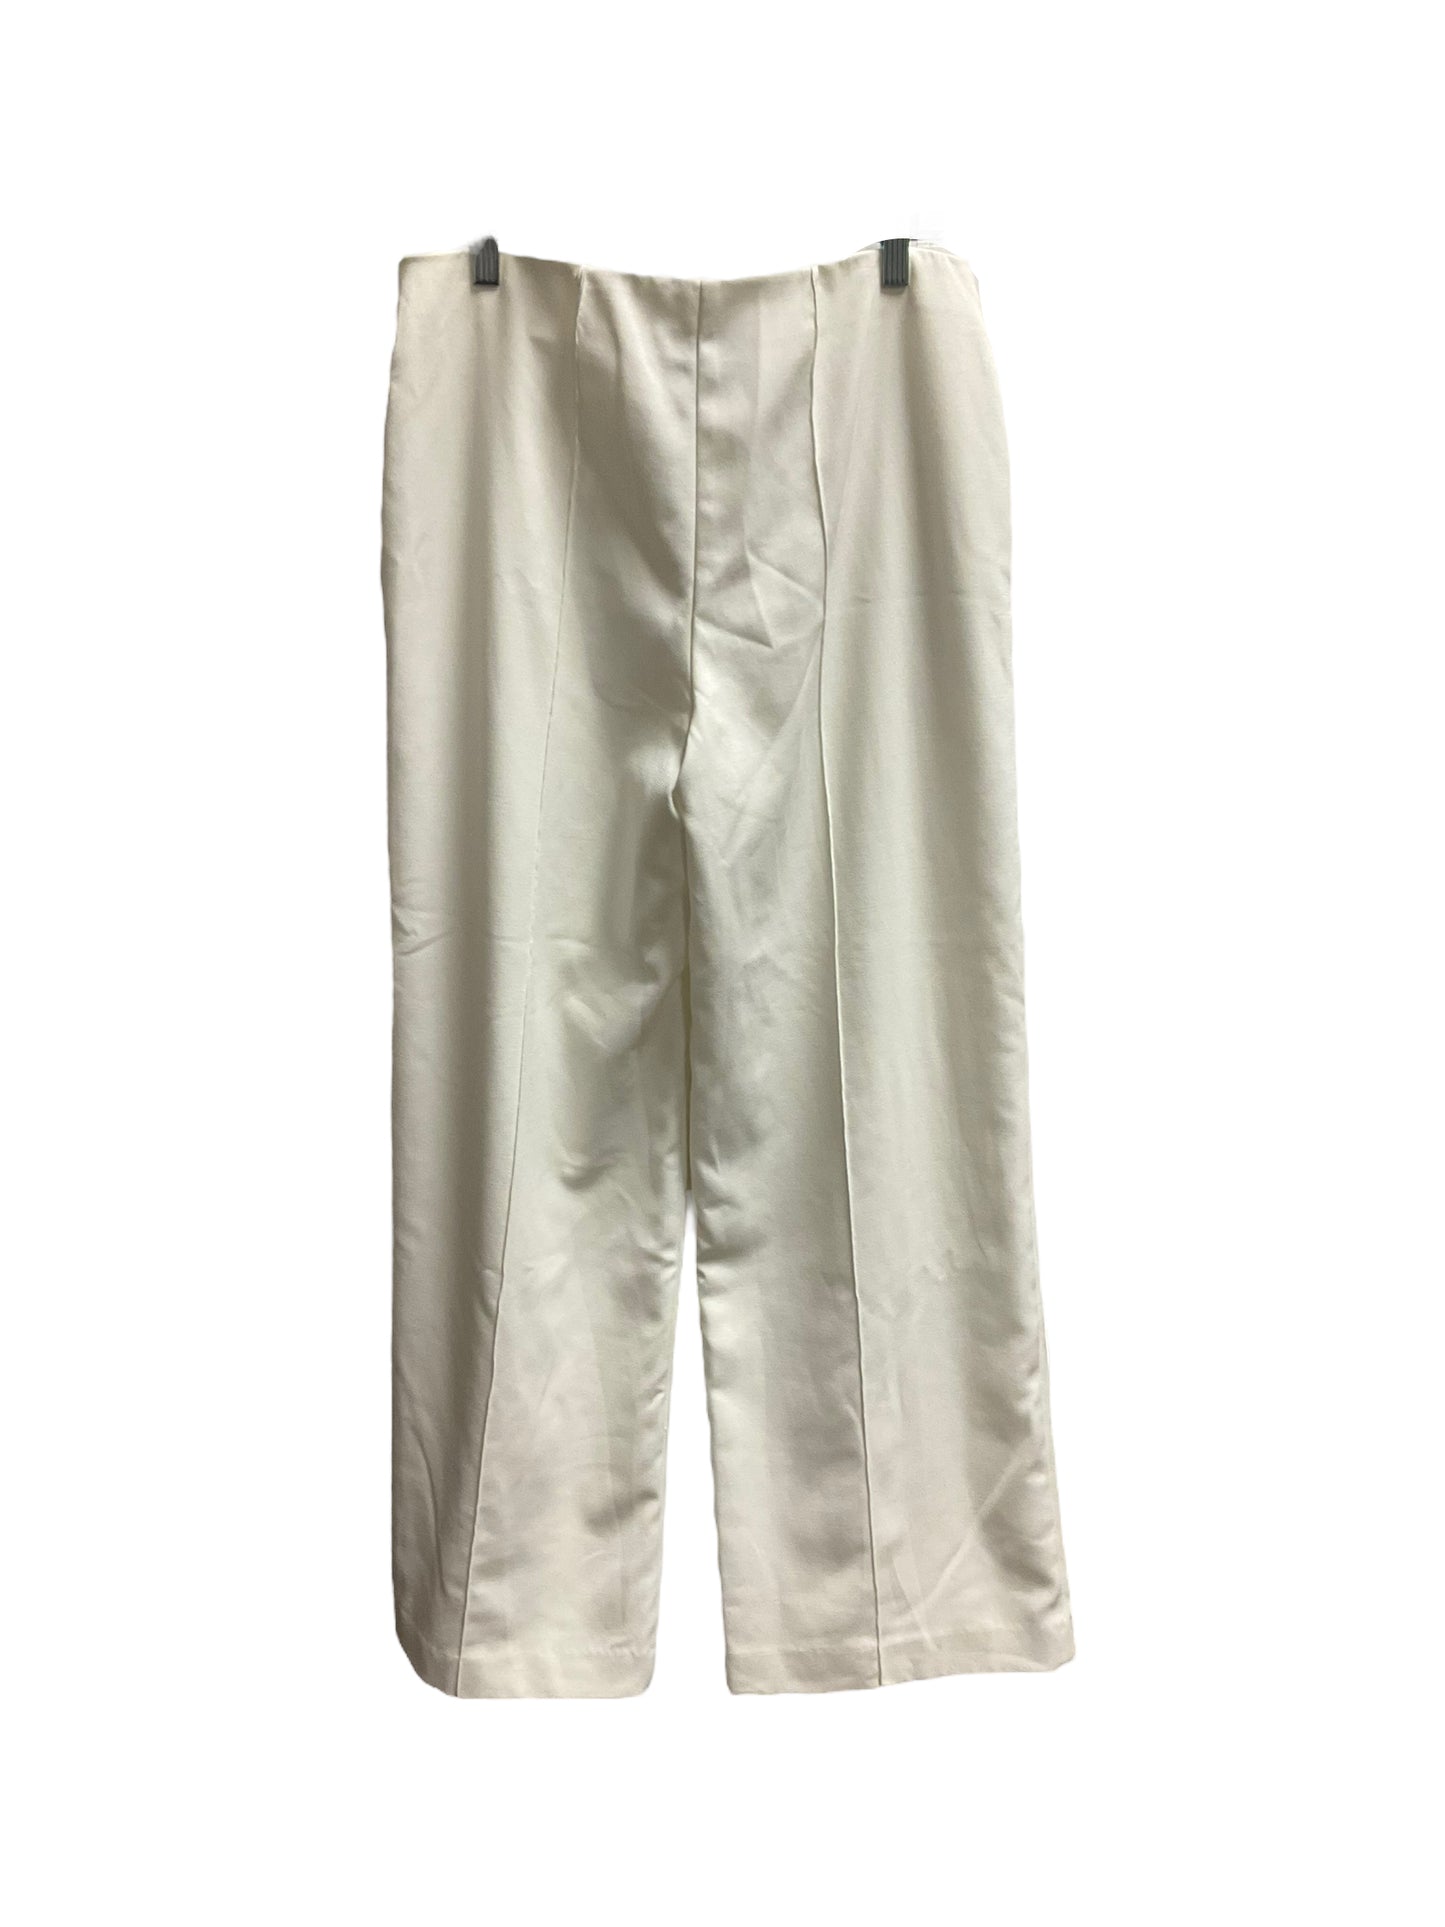 Pants Work/dress By Alfani  Size: 8